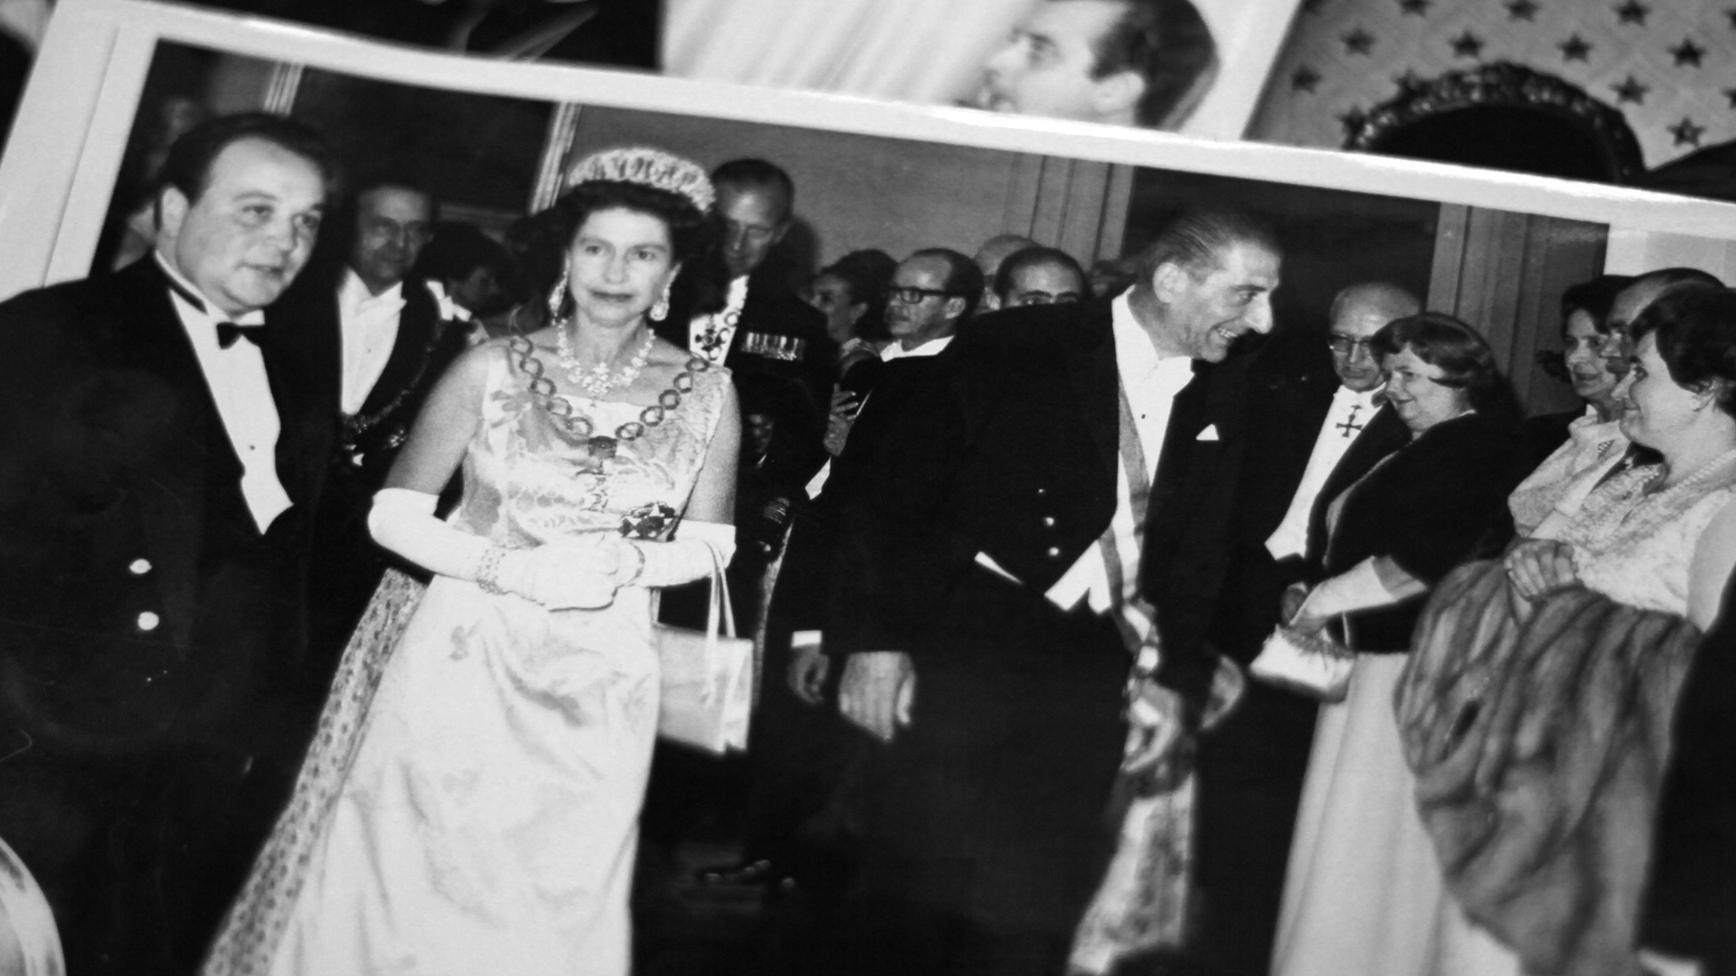 Fotografía en blanco y negro de la reina Isabel II y Eduardo Frei Montalva.